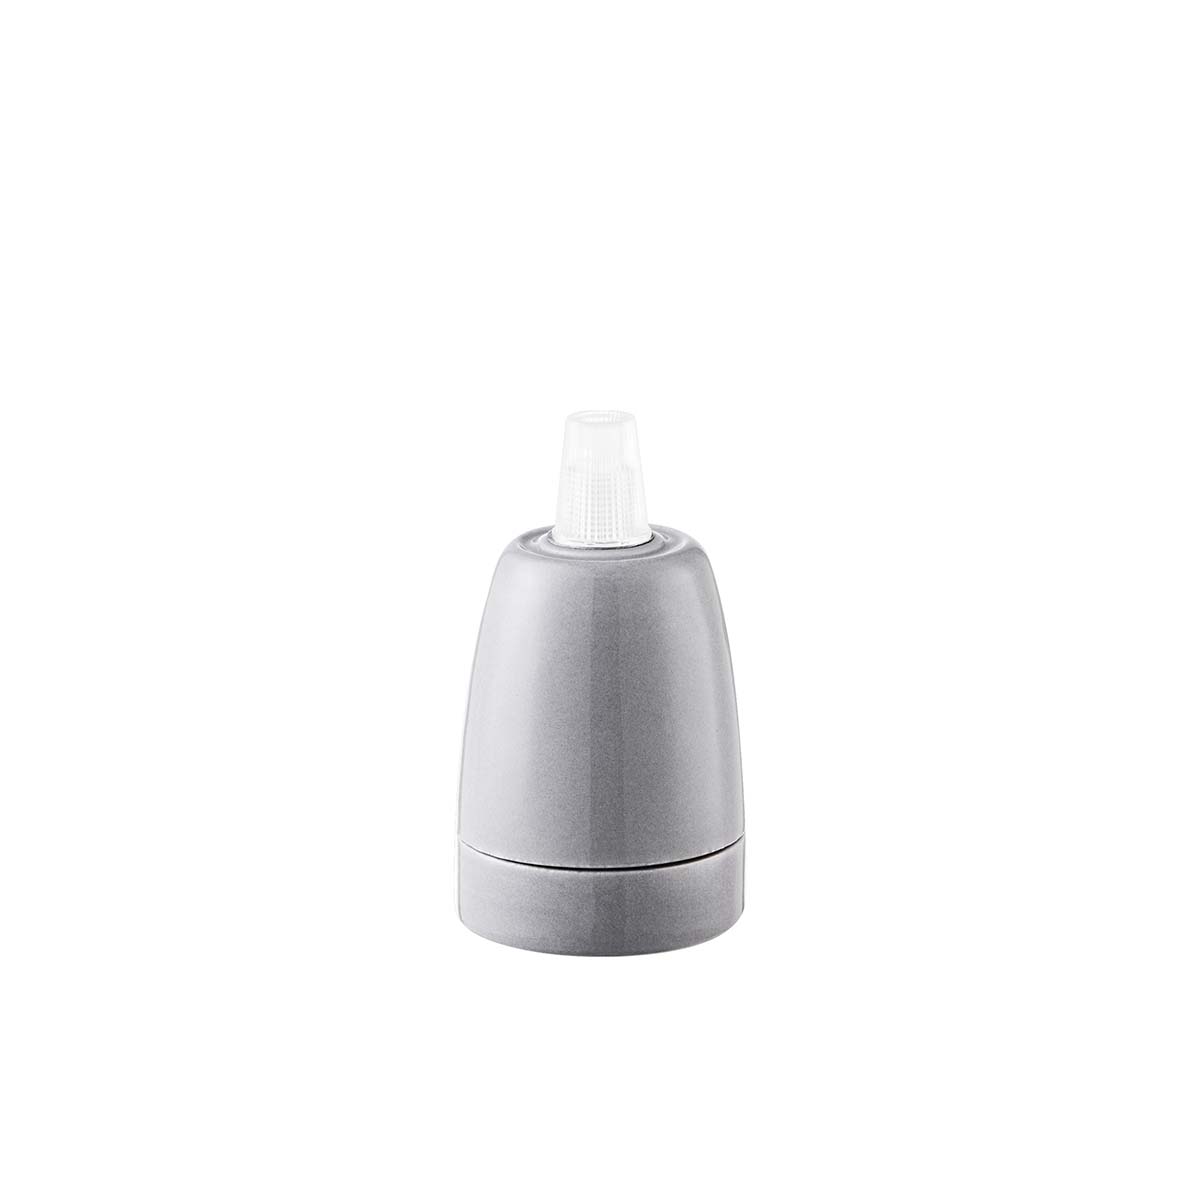 Tangla lighting - TLLH025GY - lamp holder porcelain - E27 - pot - grey